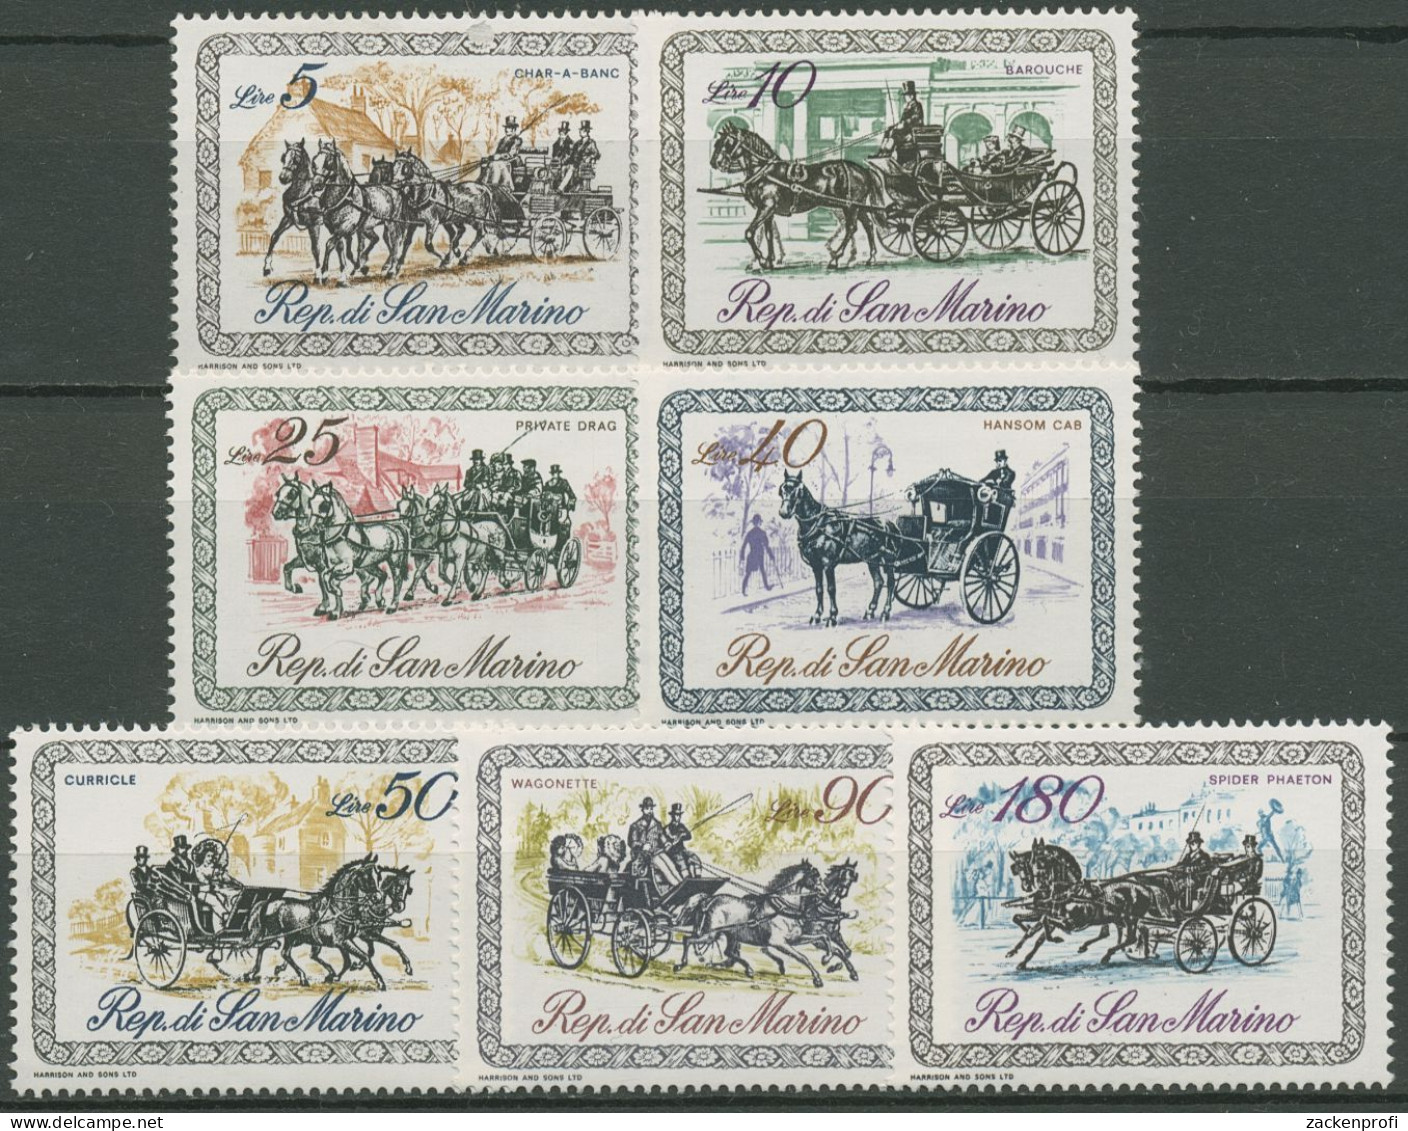 San Marino 1969 Kutschen 929/35 Postfrisch - Unused Stamps